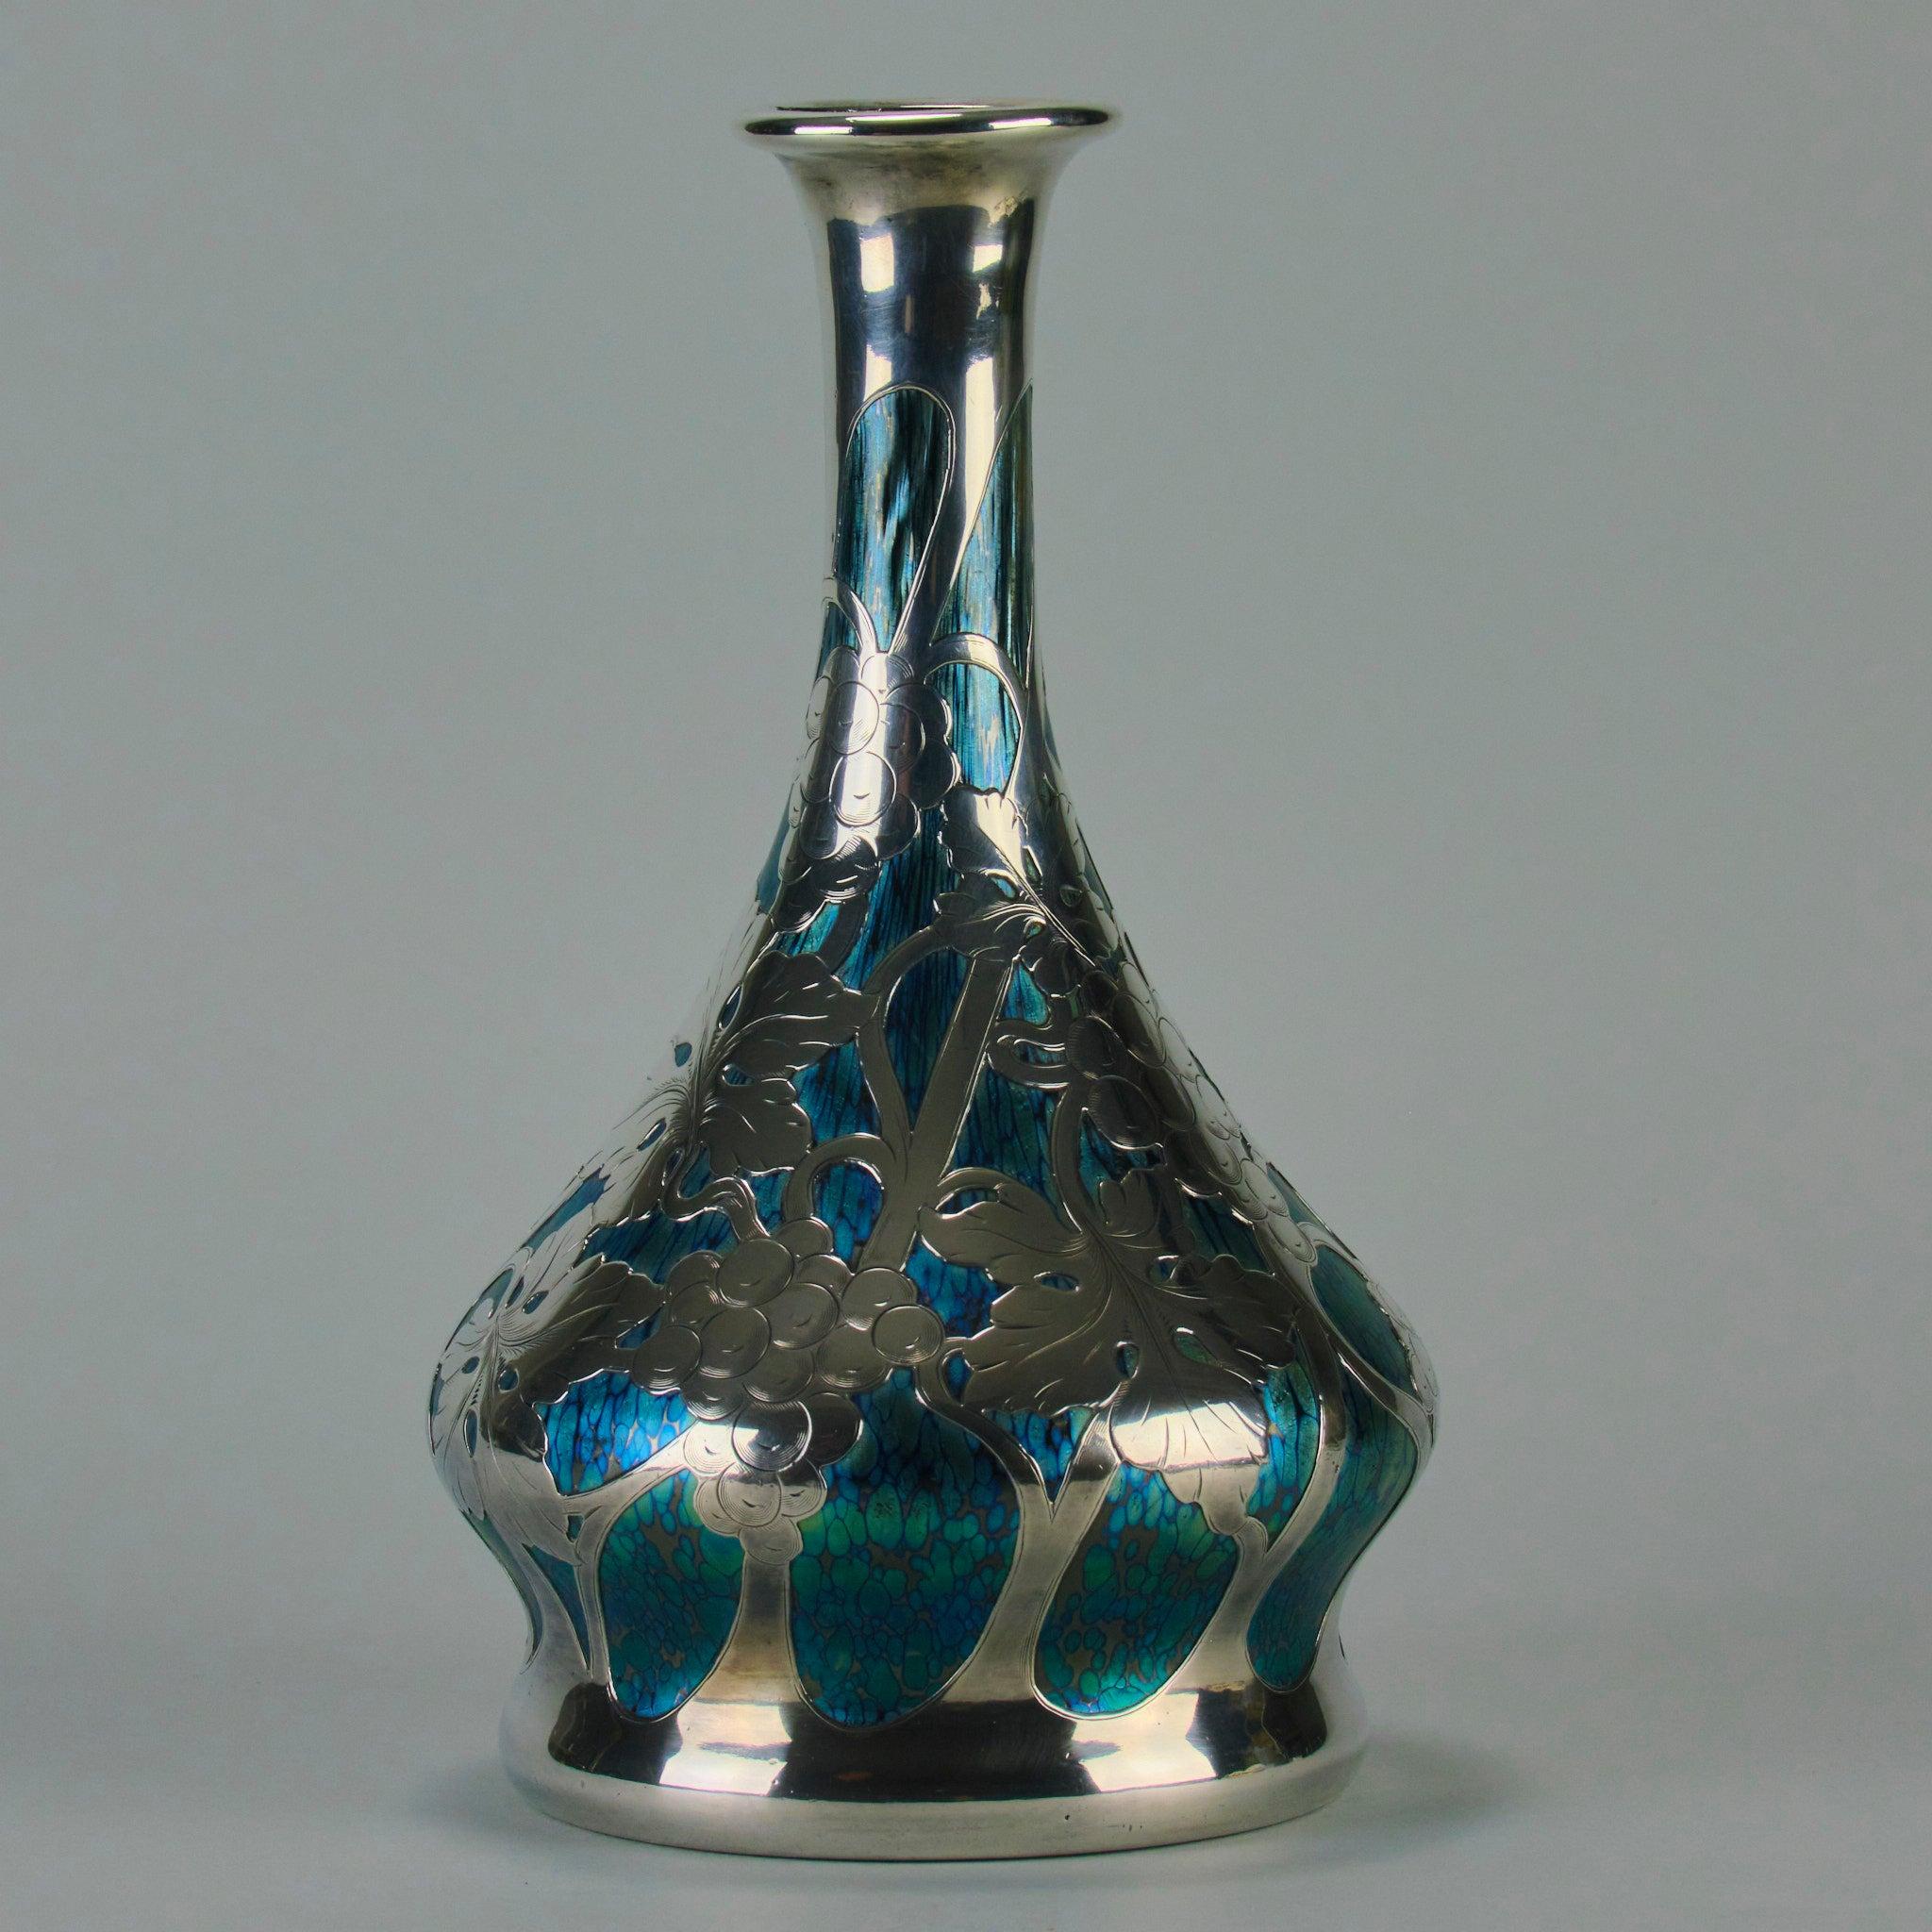 Silver “Cobalt Papillon Vase” Art Nouveau Glass Vase by the Loetz Glassworks